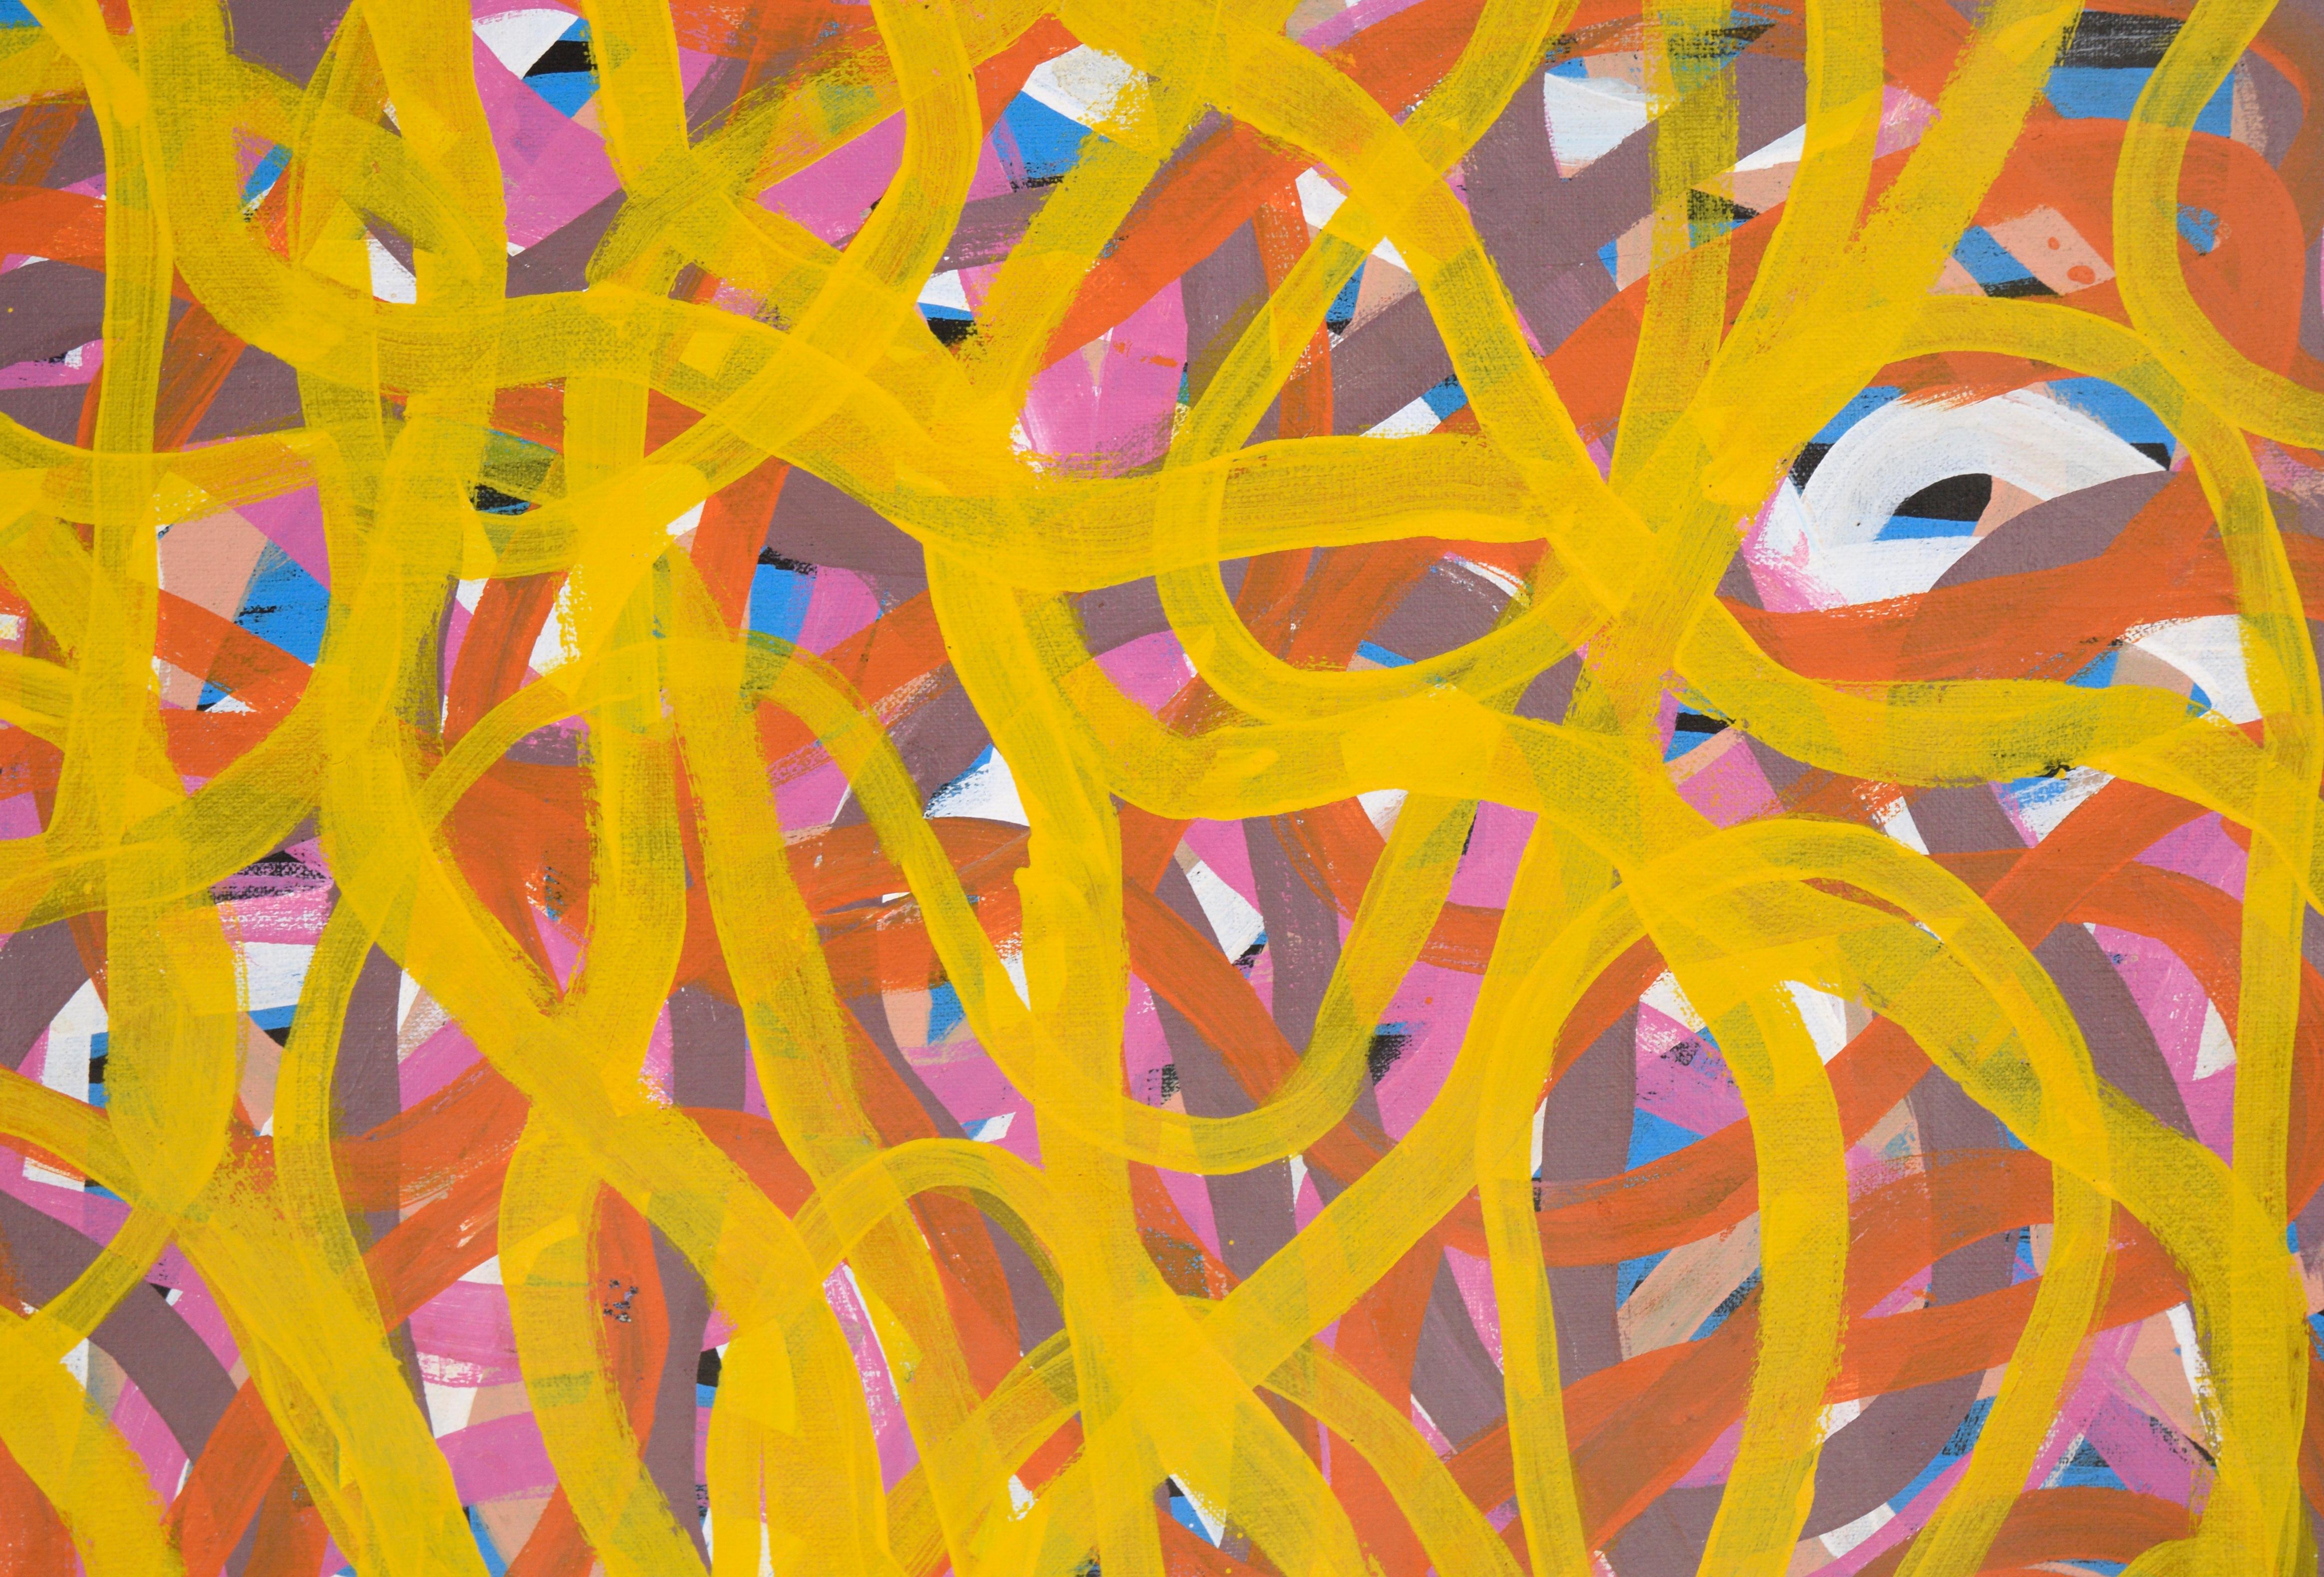 Wild Yam Dreaming - Abrégé aborigène australien par Judy Greenie Kngwarreye (Ngwarai)

Composition lumineuse et fluide de Judy Greenie Purvis Kngwarreye (ou Ngwarai) (Aborigène australien, né en 1962). Construites en plusieurs couches, des lignes